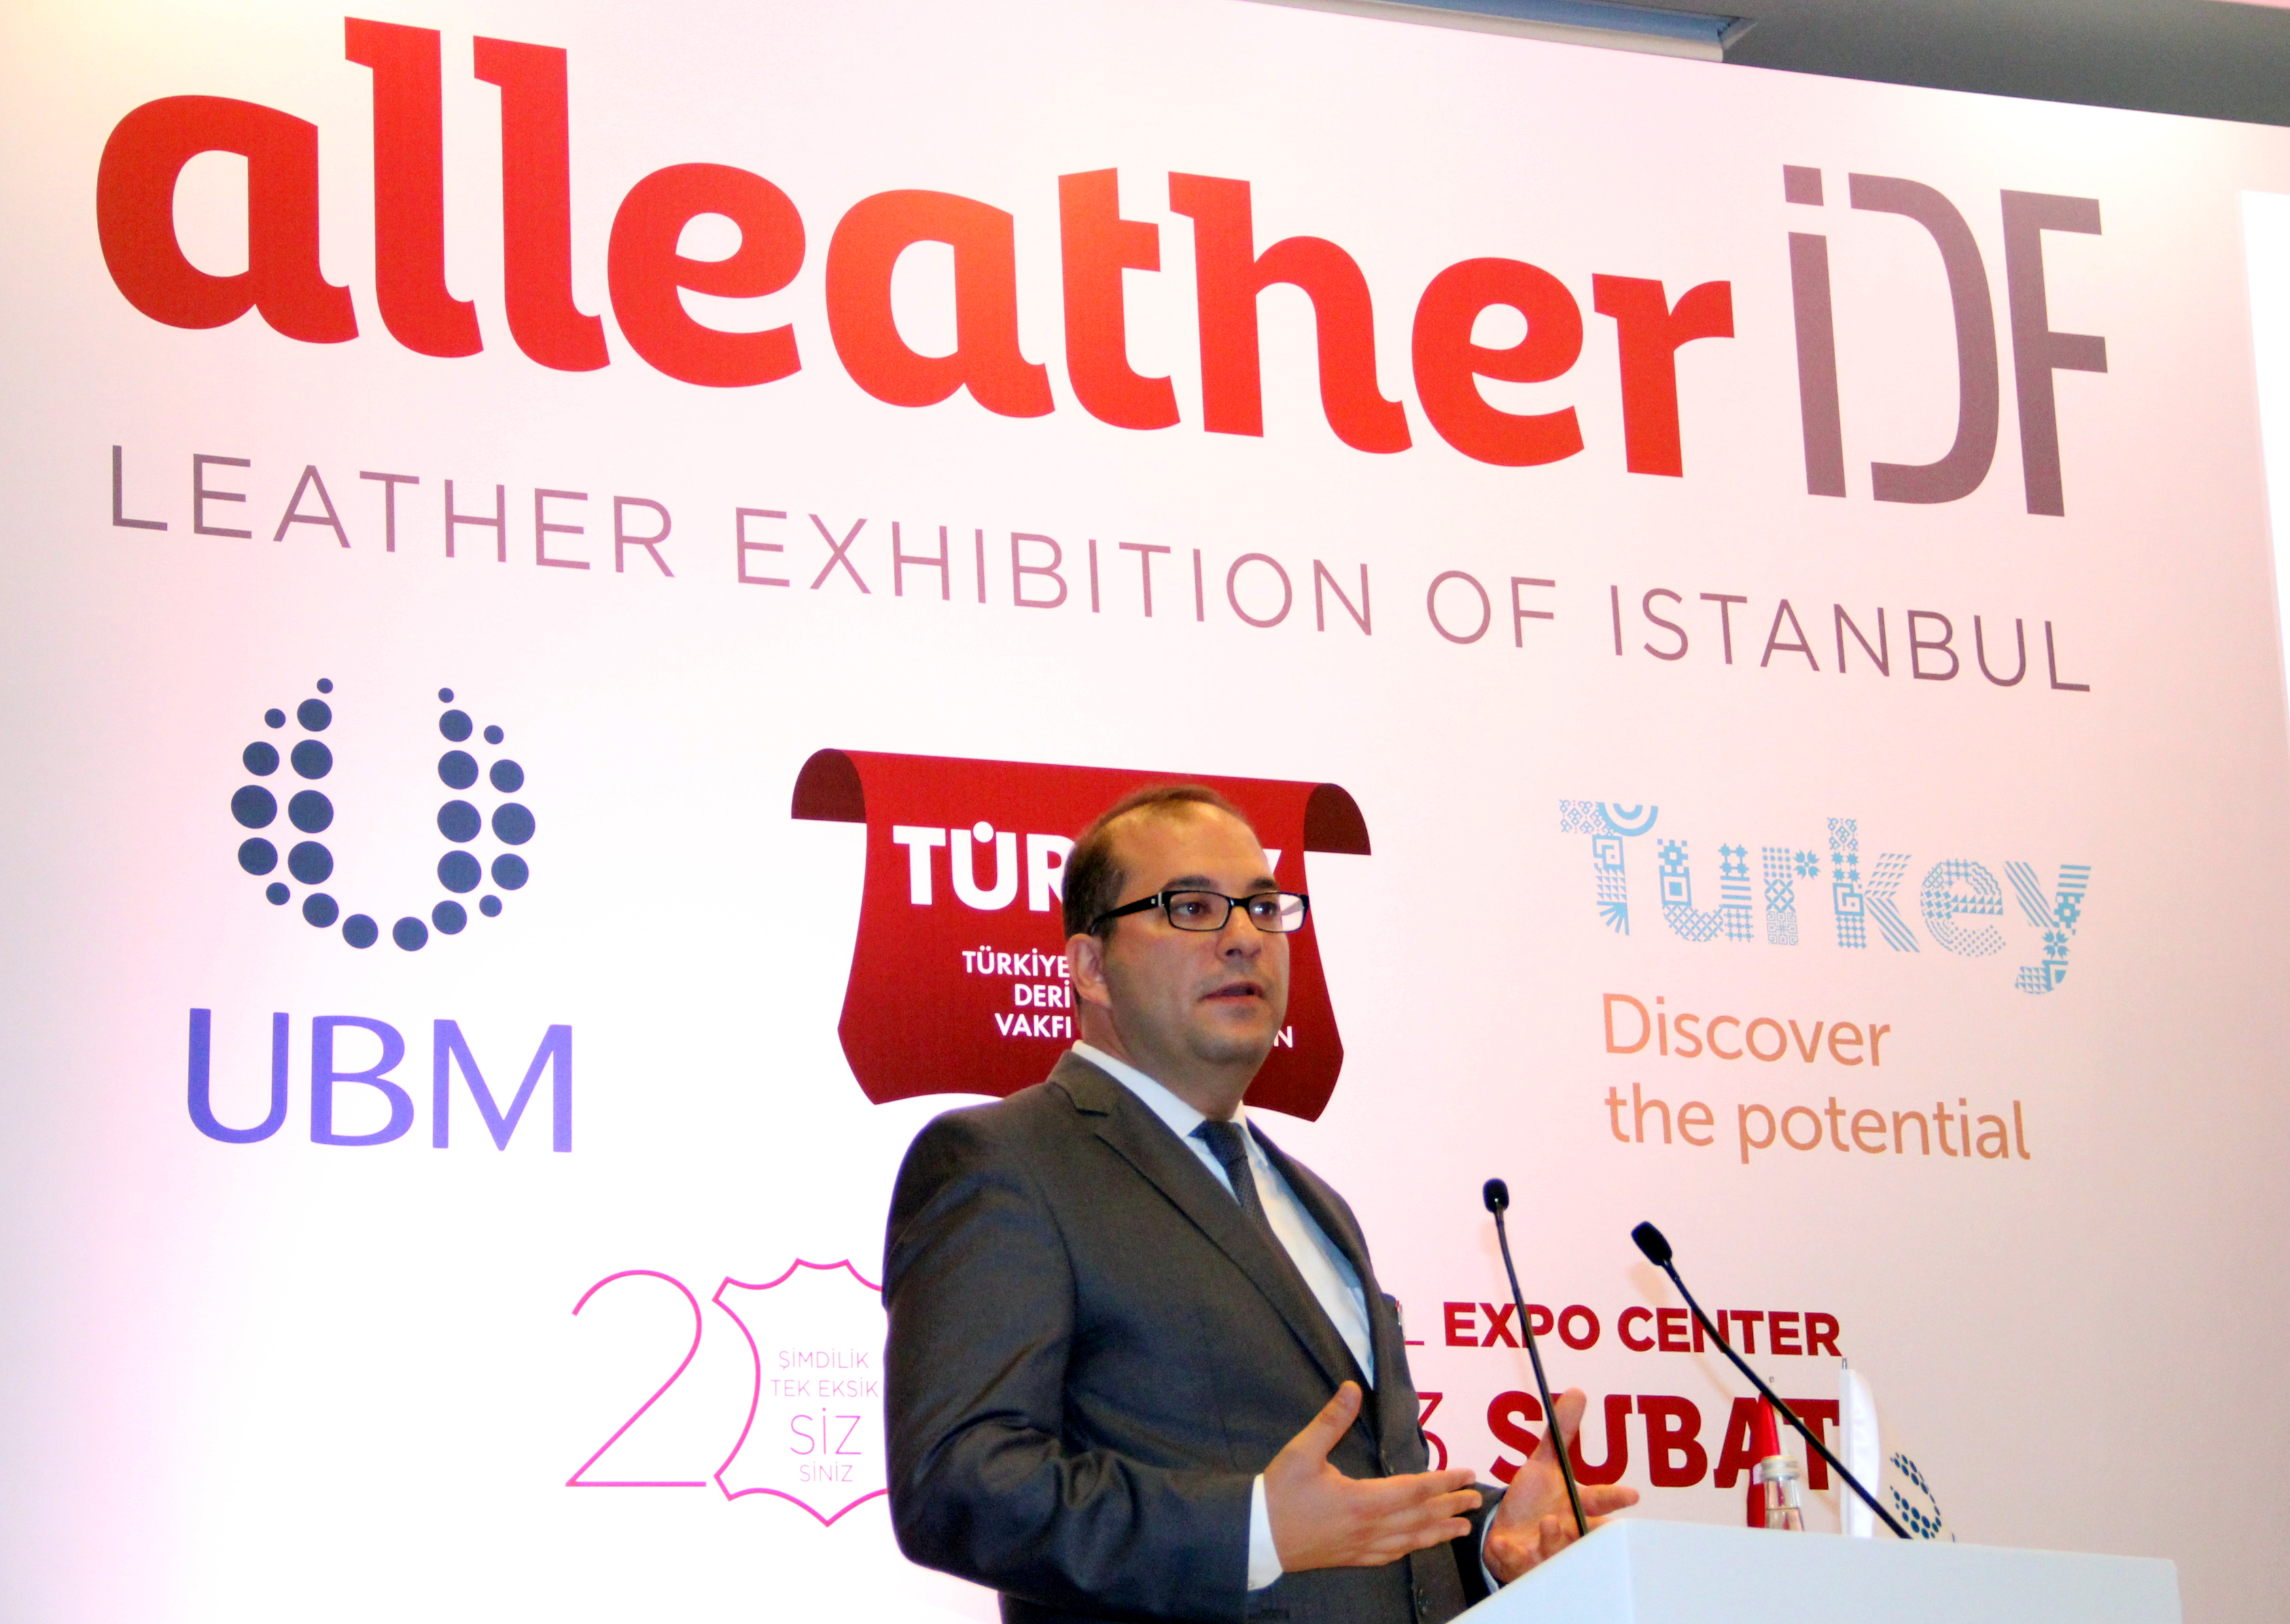 Türk deri sektörü, Alleather-IDF ile dünya pazarlarına açılacak-1346